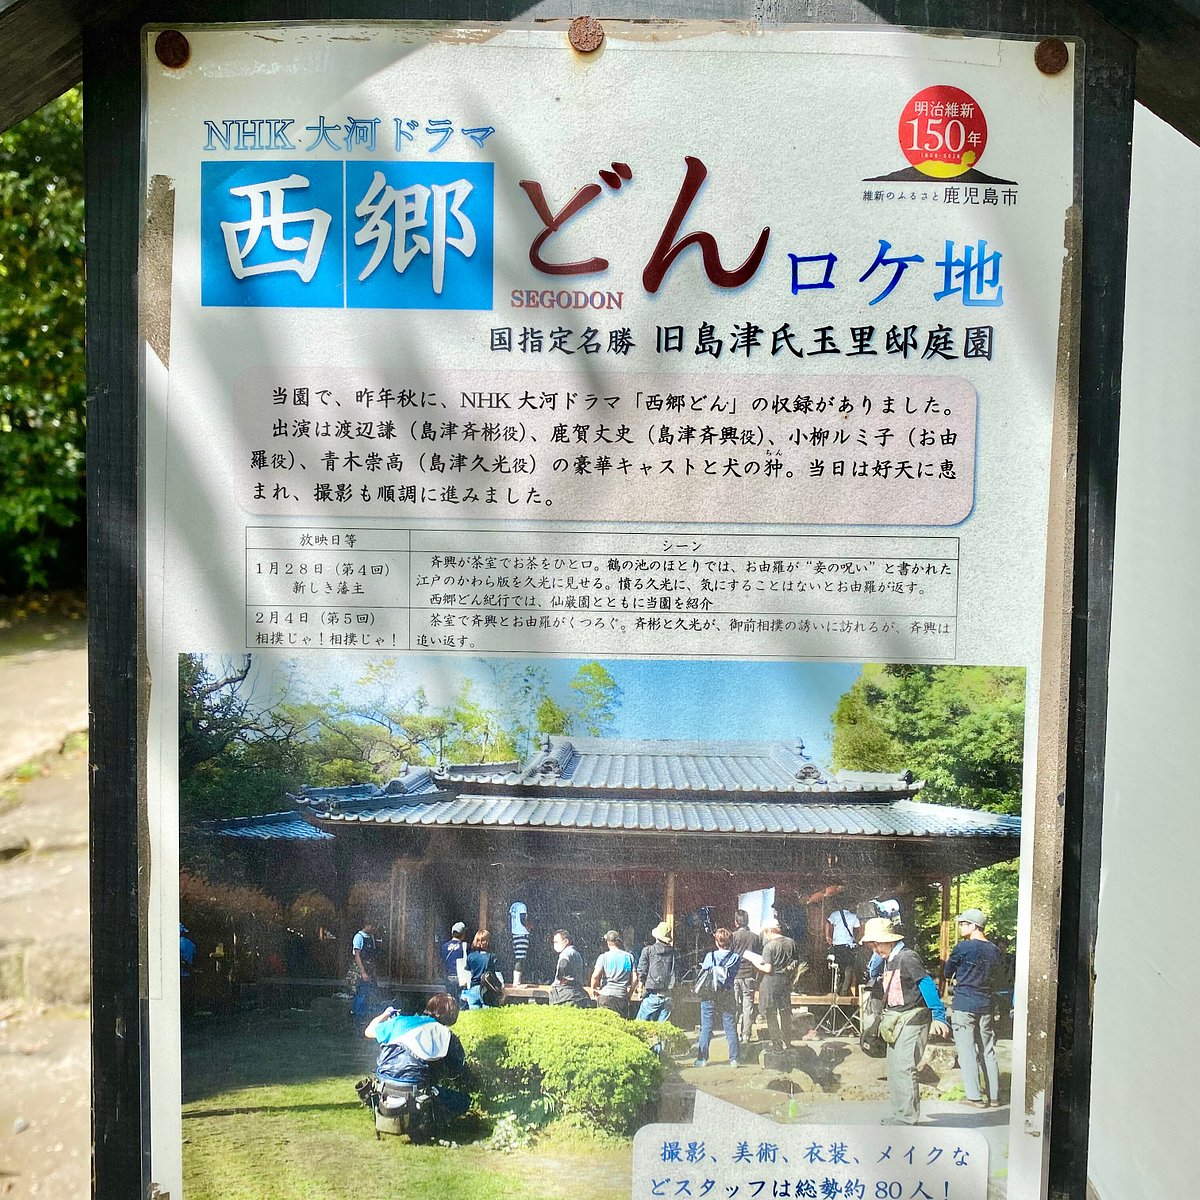 Tamazato House Gardens Of Shimazu Kagoshima 22 Alles Wat U Moet Weten Voordat Je Gaat Tripadvisor